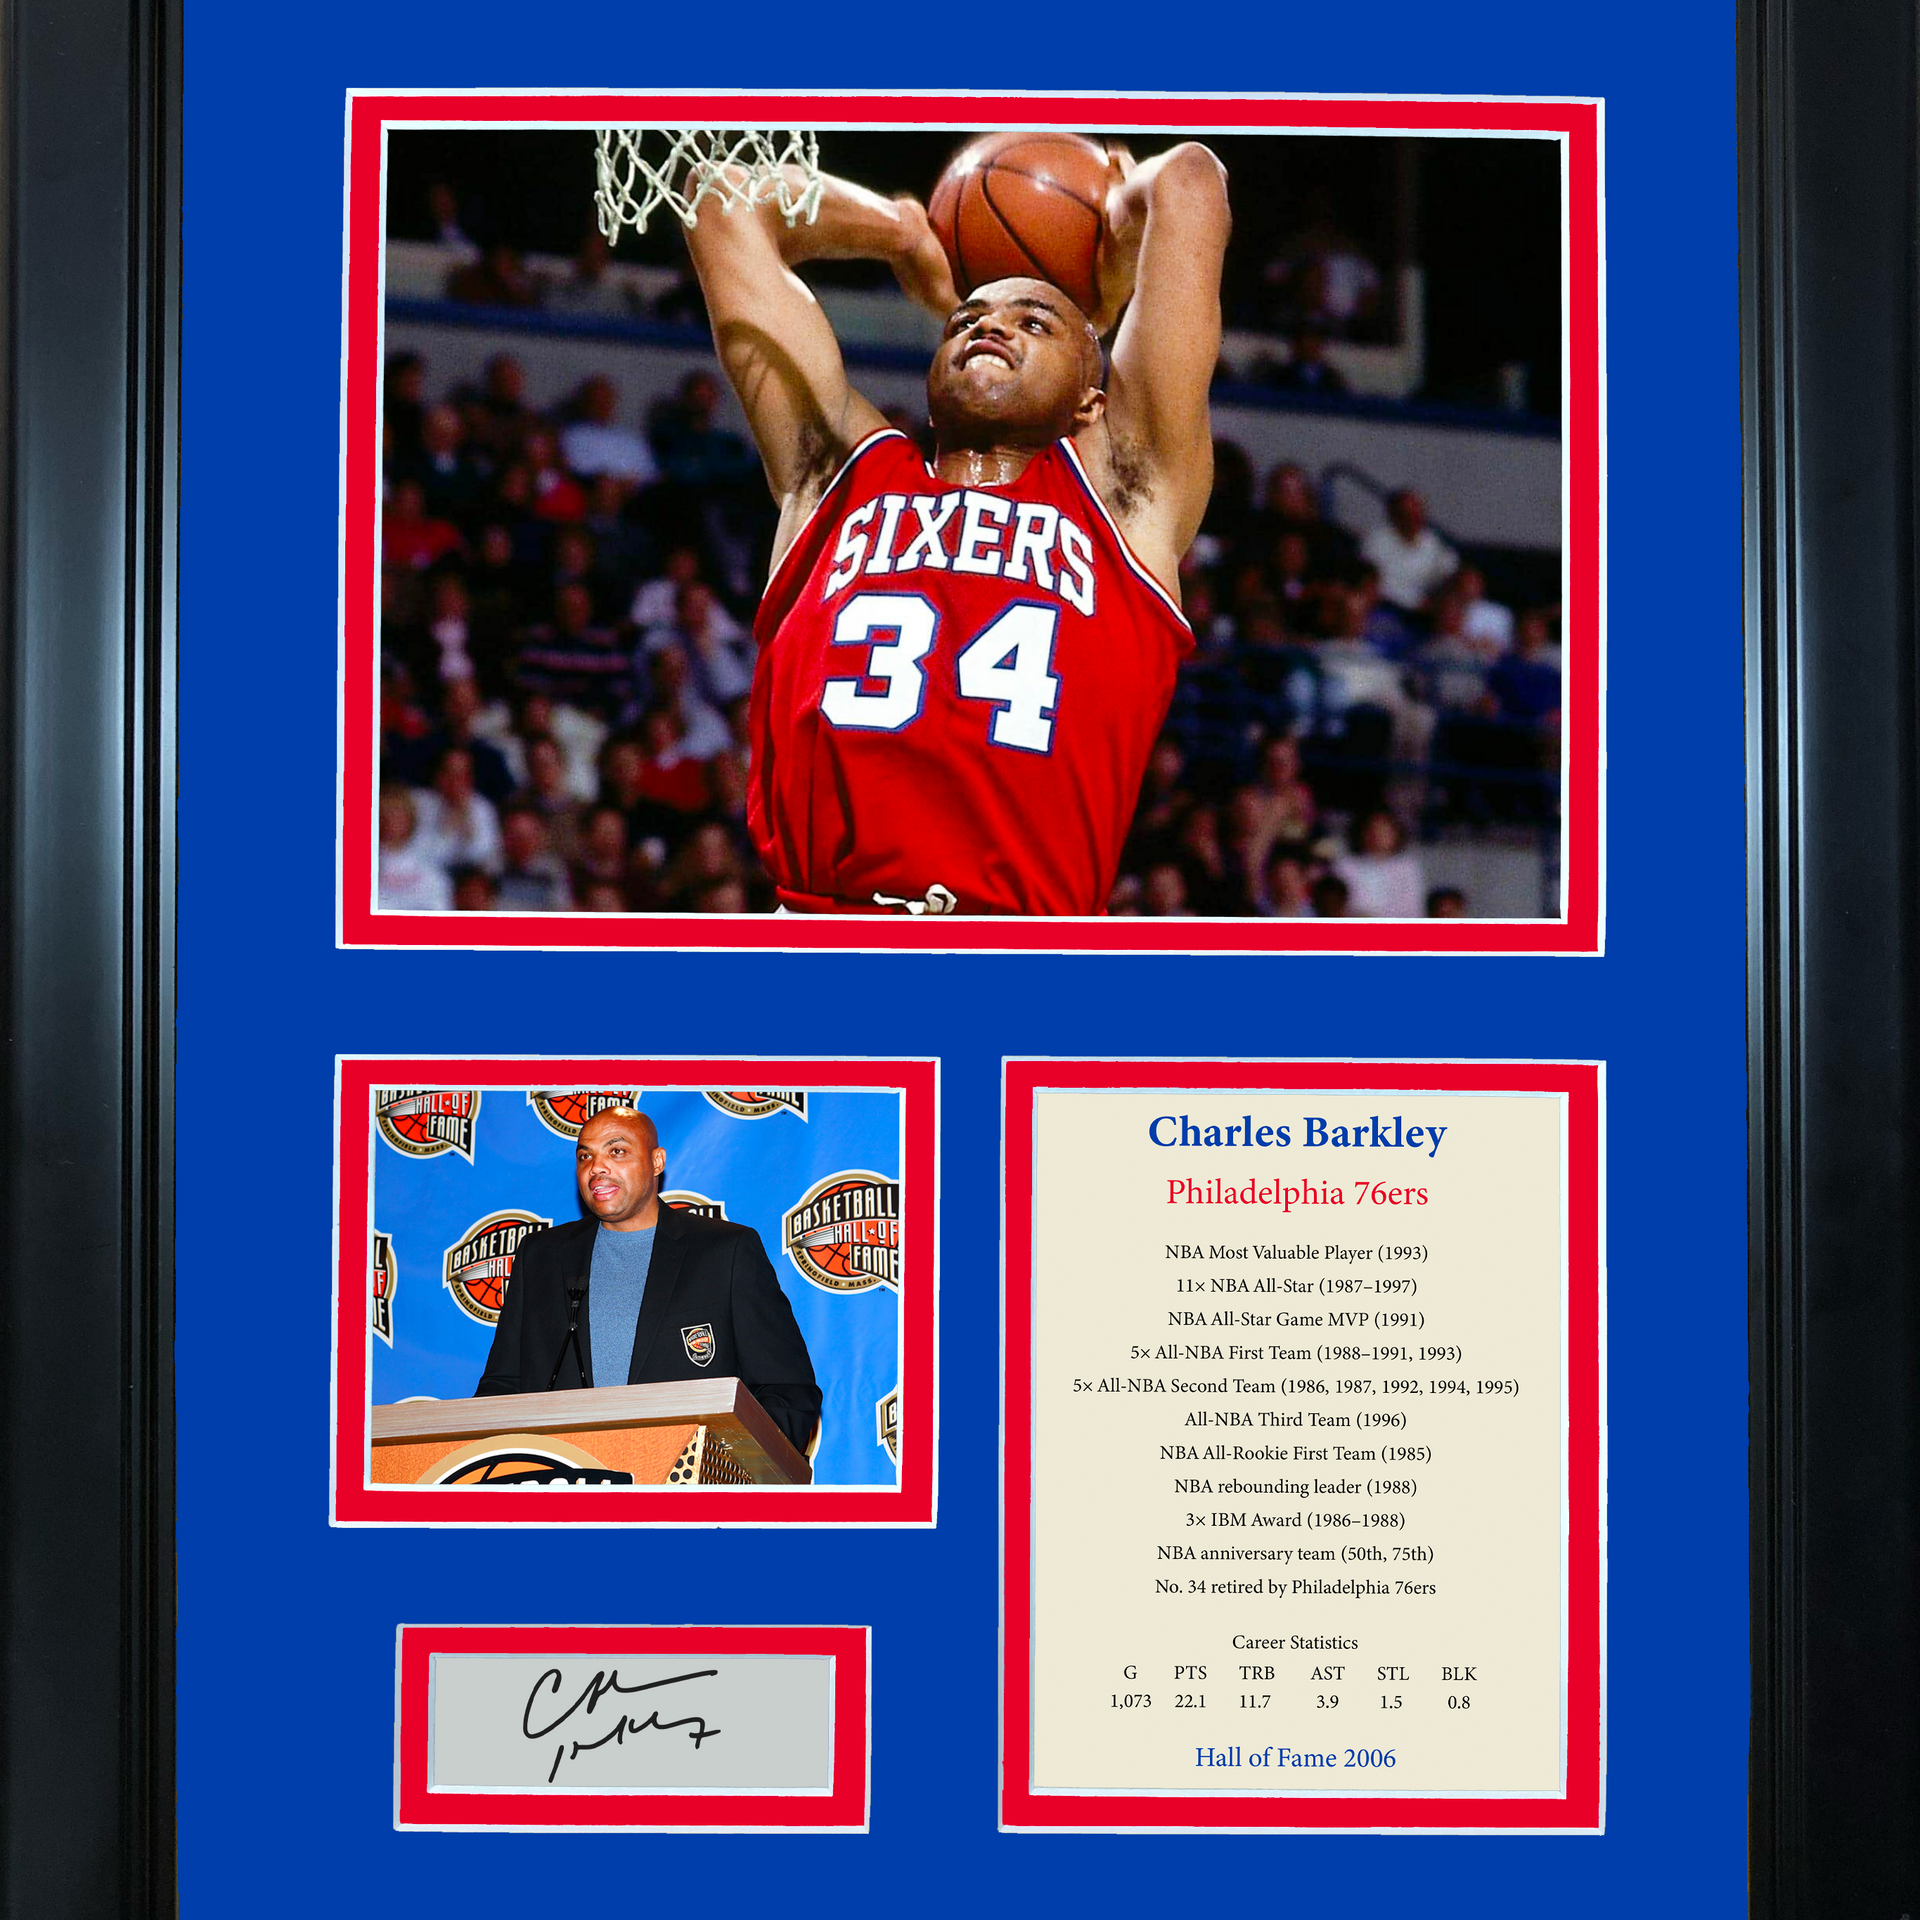 Framed Charles Barkley Hall of Fame Philadelphia 76ers Basketball